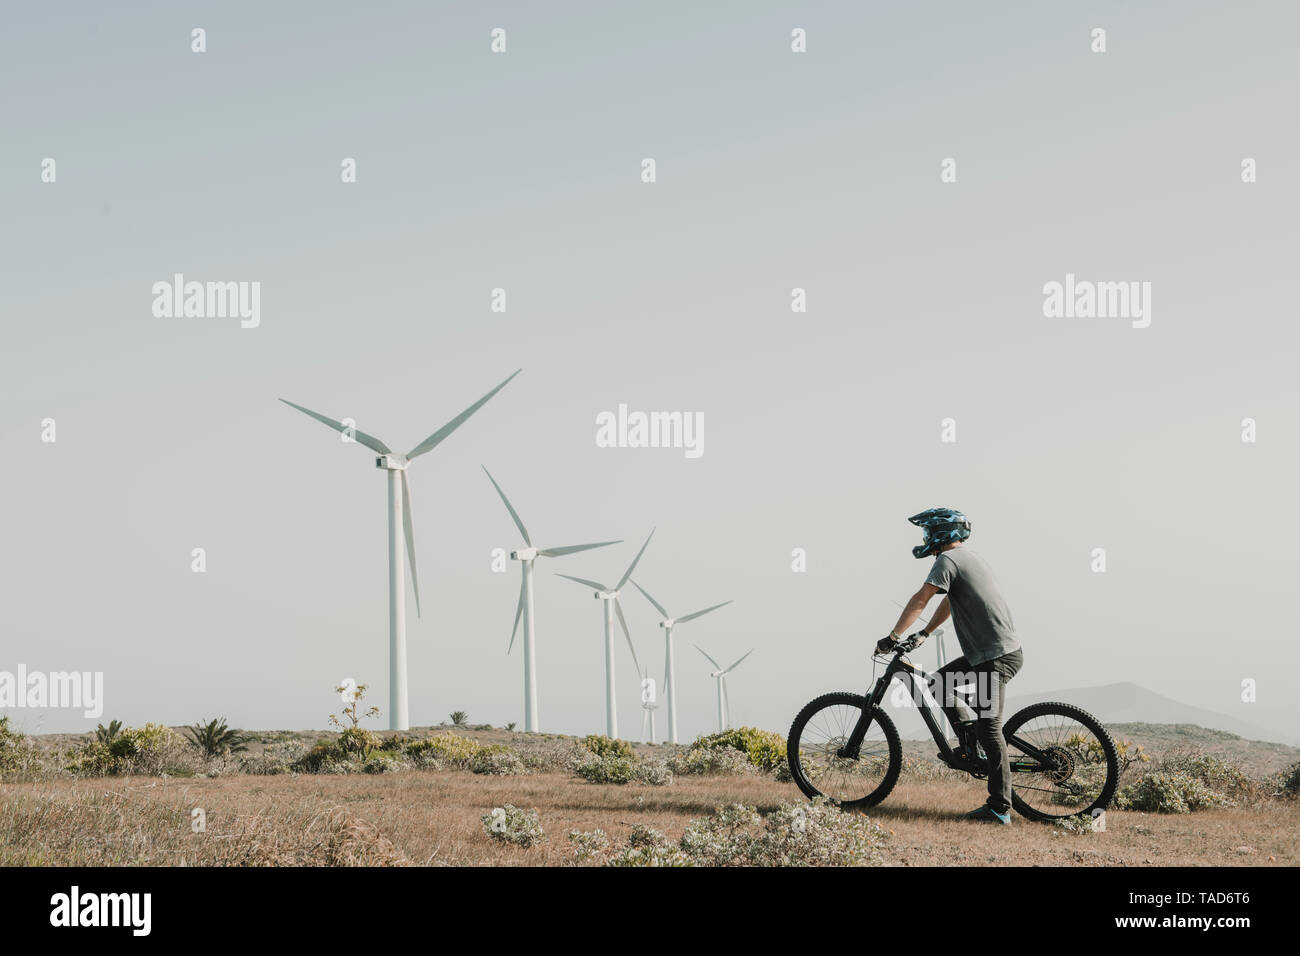 Spagna, Lanzarote, mountainbiker su un viaggio nel paesaggio desertico con turbine eoliche in background Foto Stock